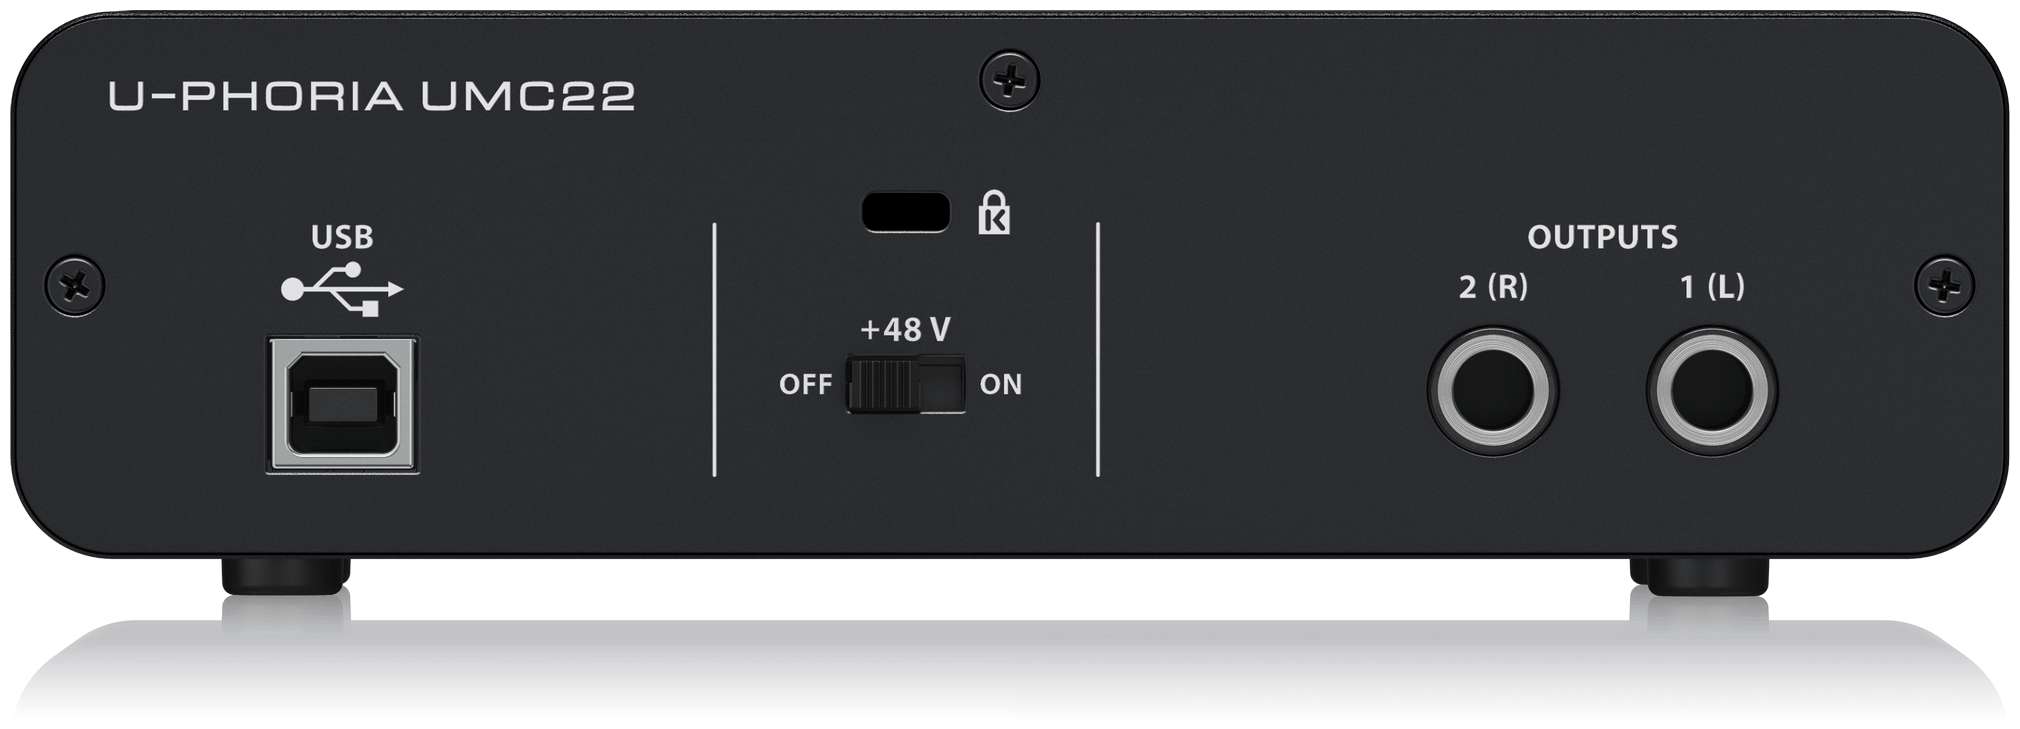 Аудиоинтерфейс Behringer UMC22 внешний USB для записи и воспроизведения звука на компьютере (PC / MAC)